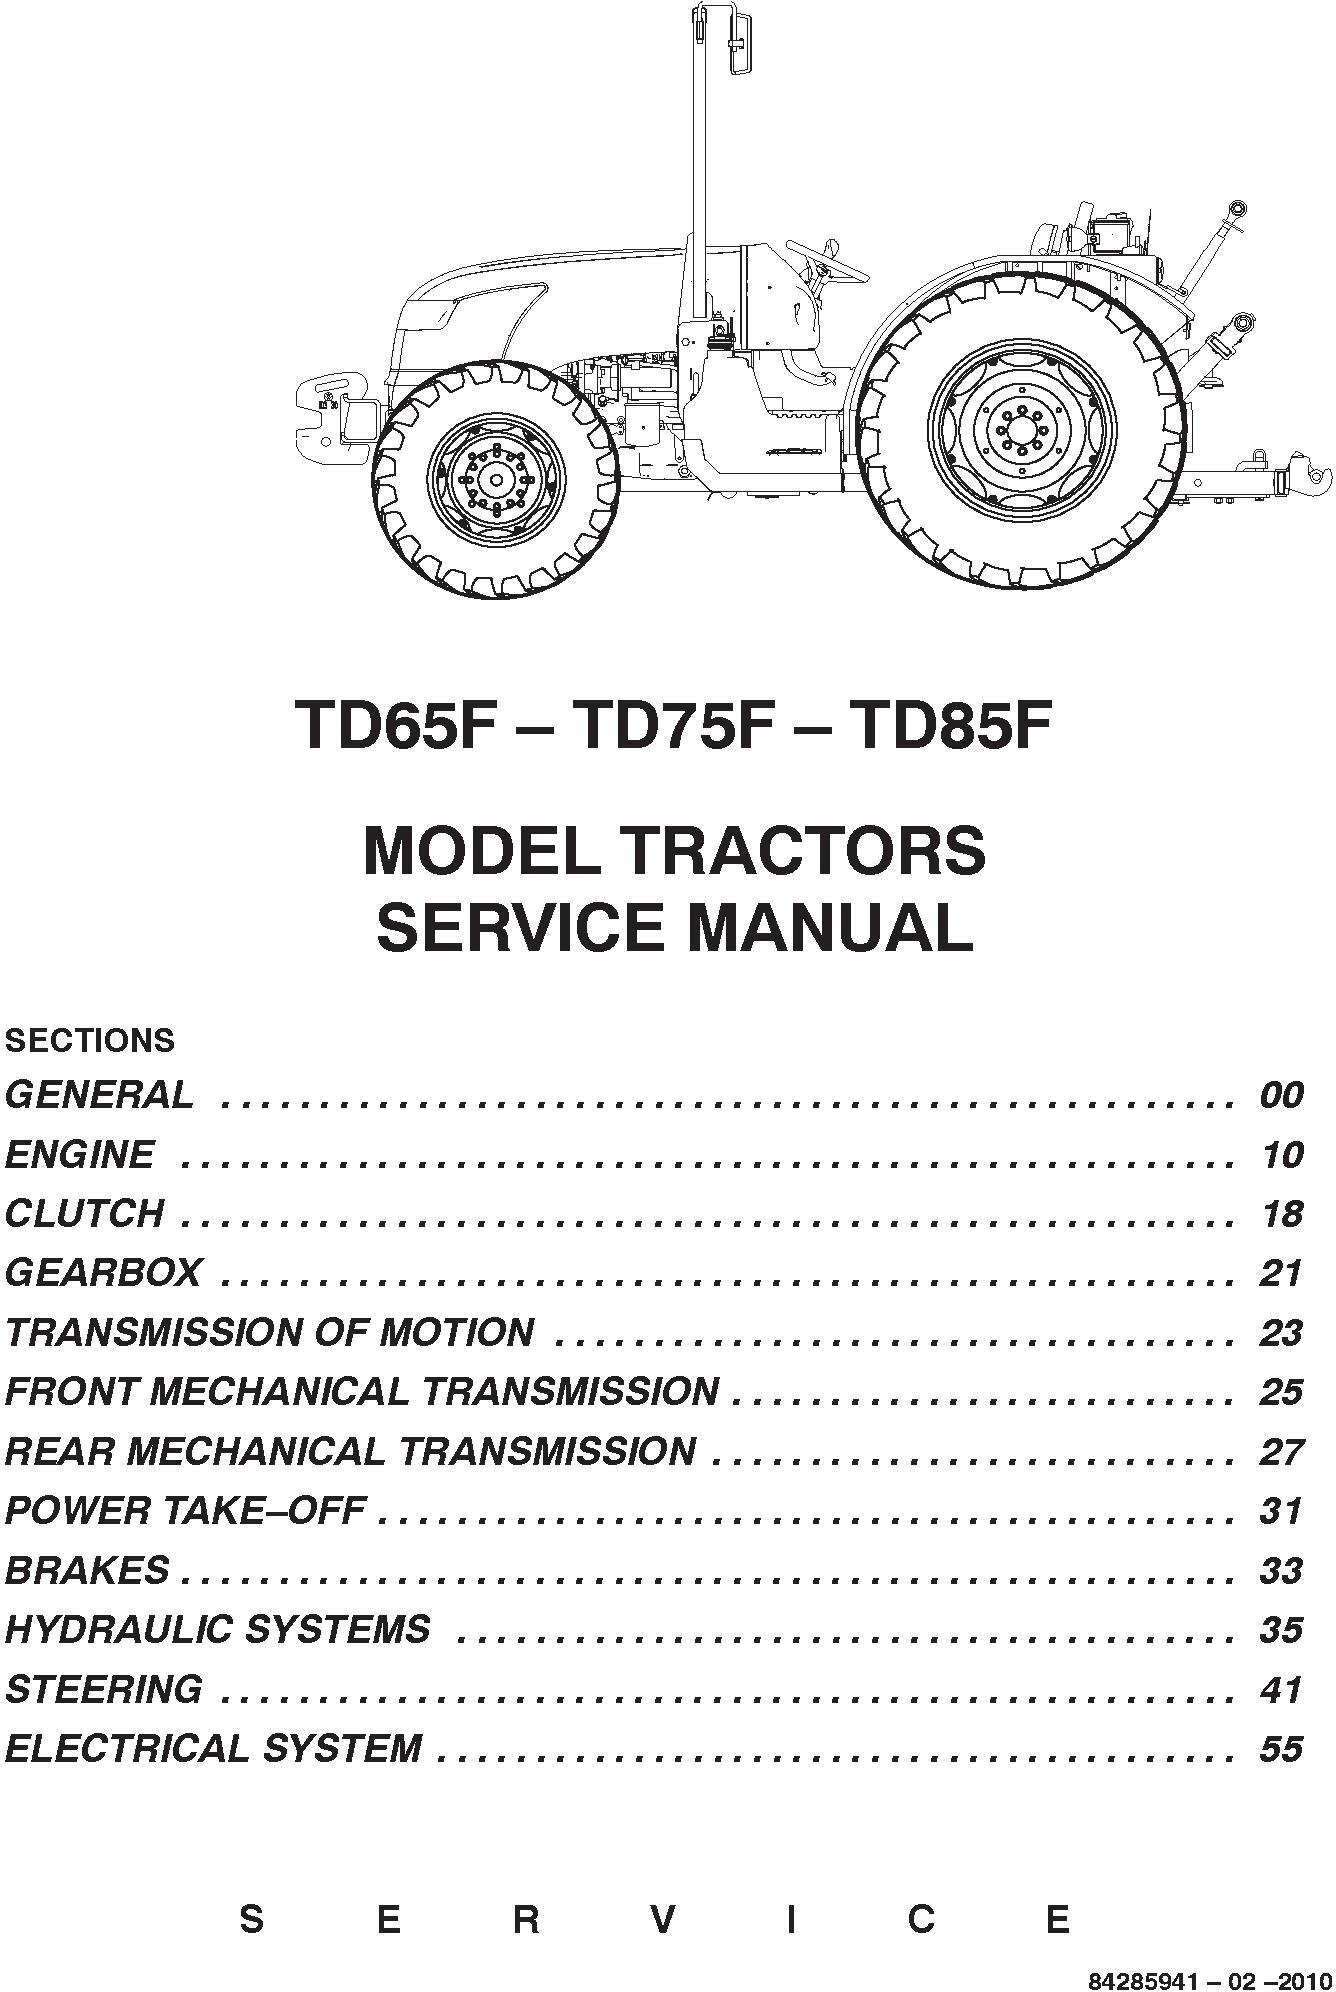 New Holland TD65F, TD75F, TD85F Tractors Service Manual - 1